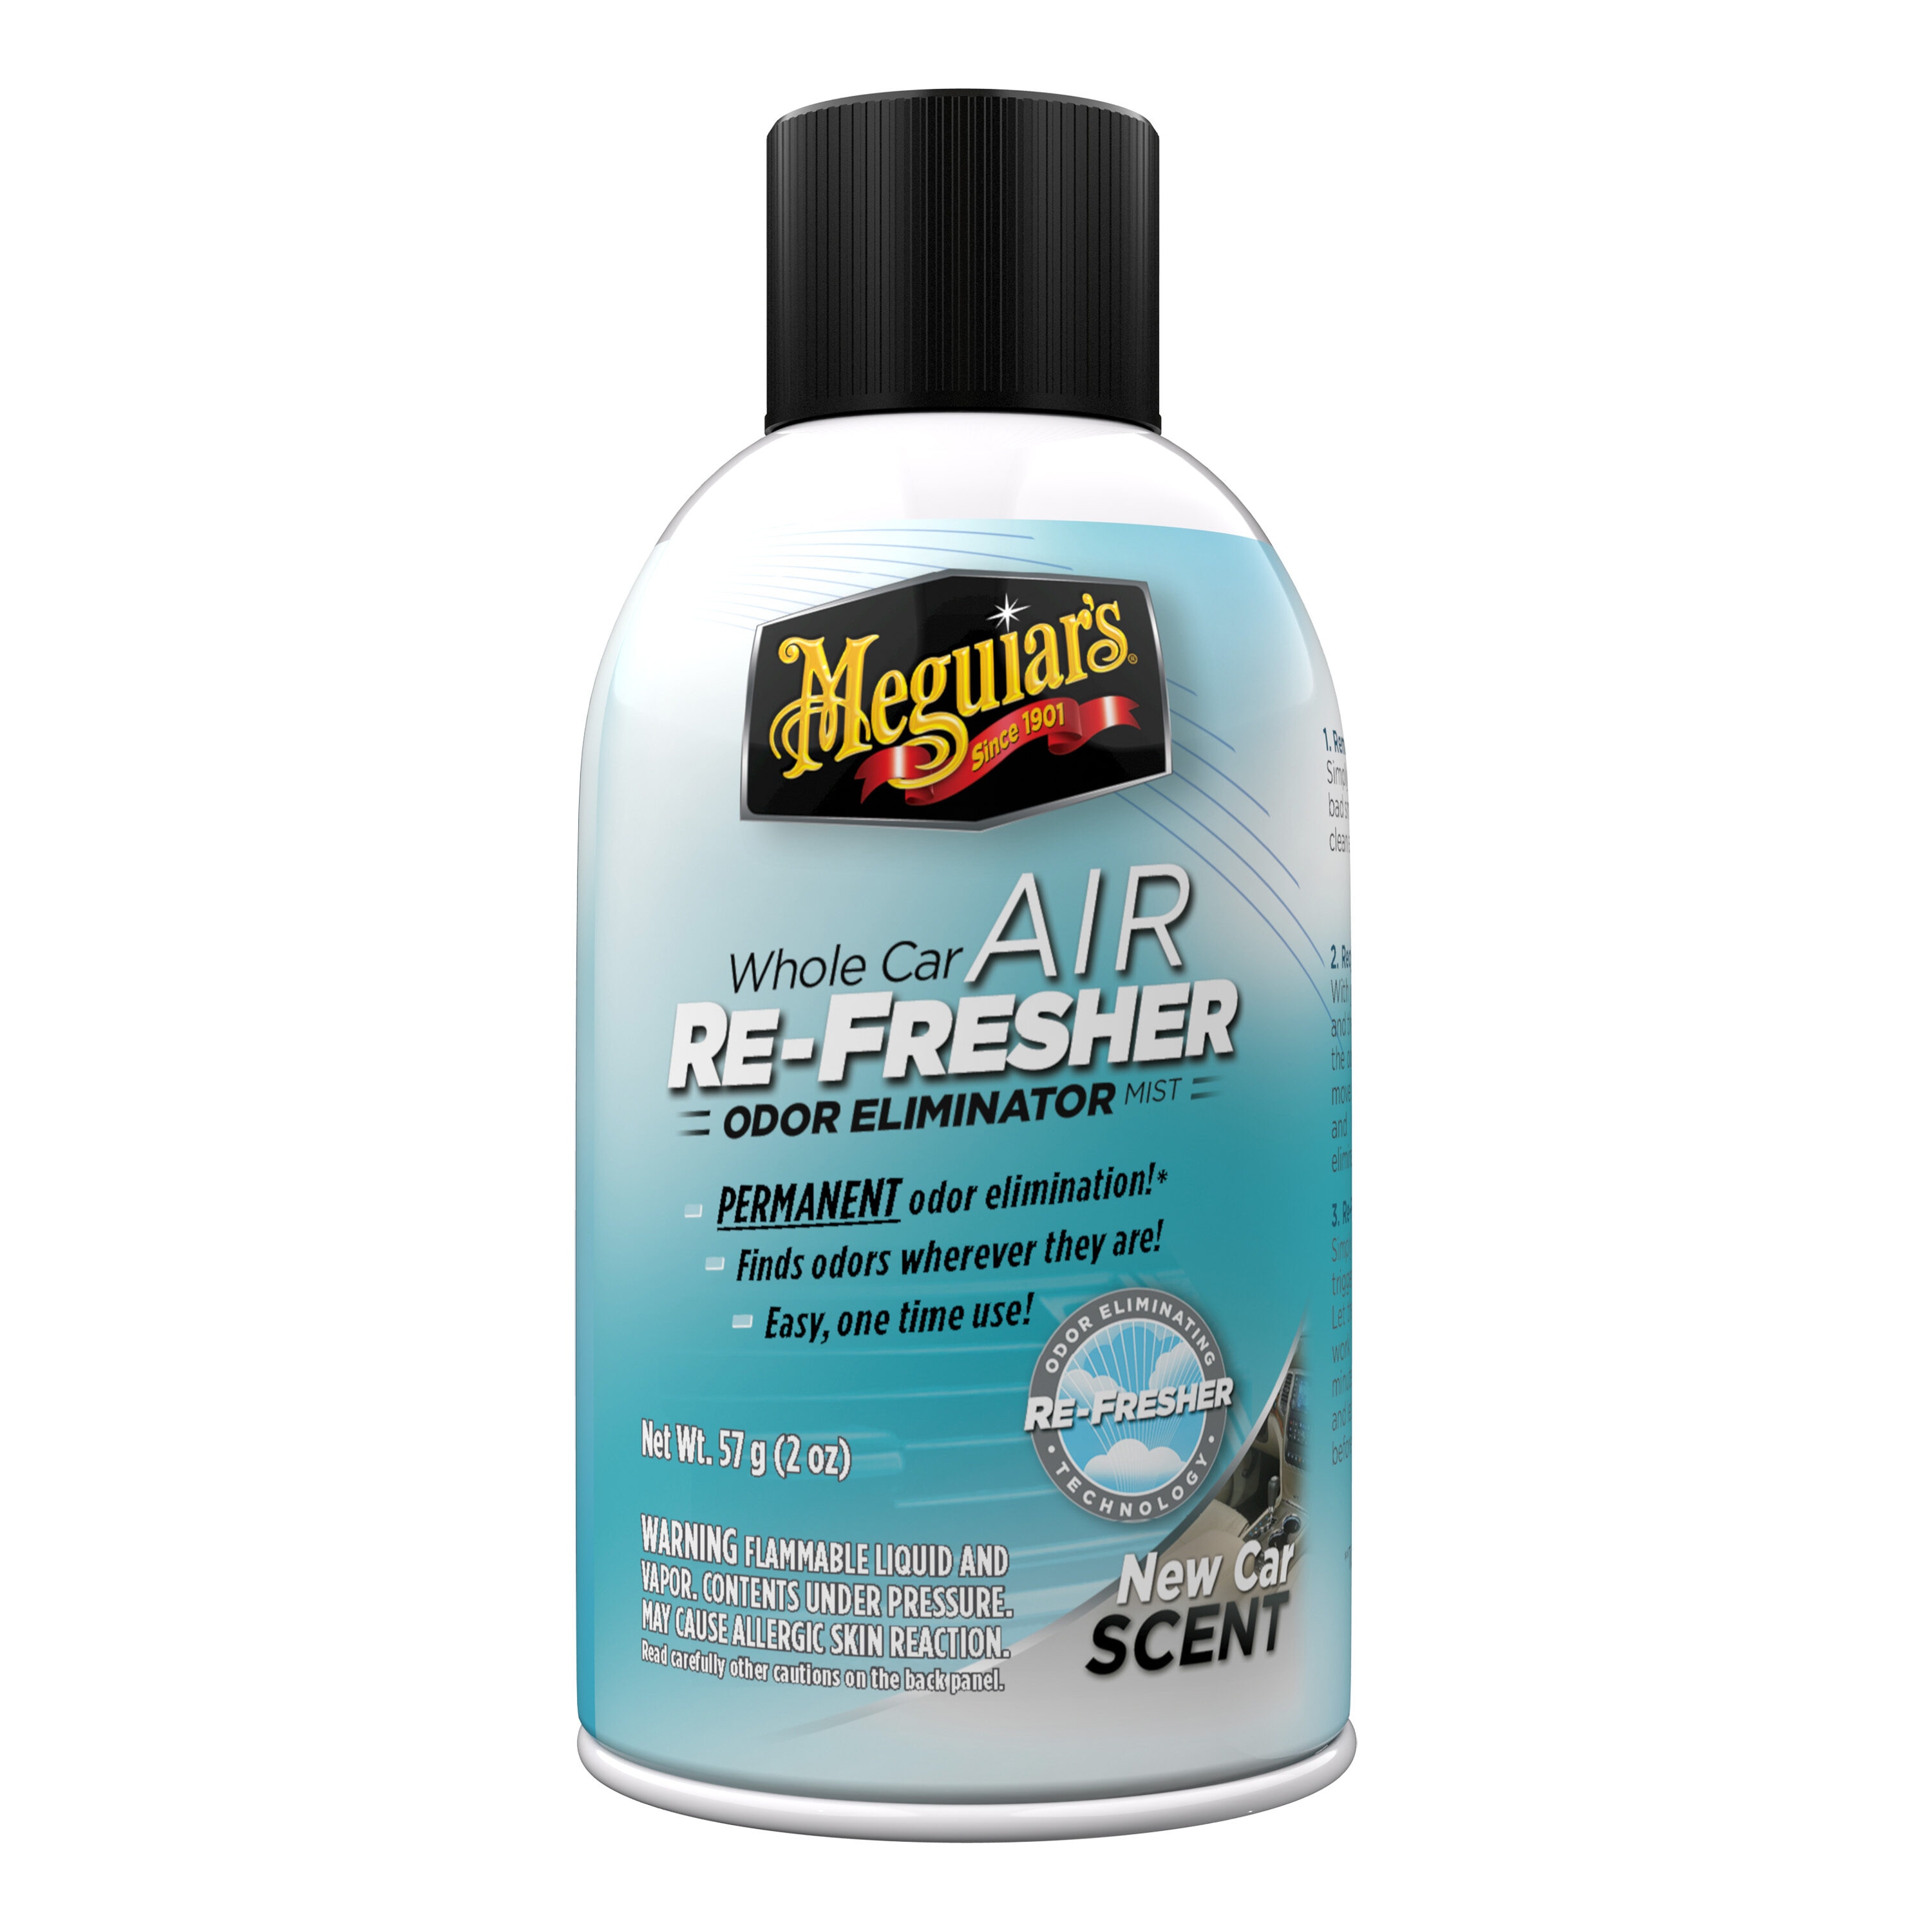 Meguiar's Whole Car Air Re-Fresher, G16402 2-fl oz New Car Scent Dispenser  Air Freshener